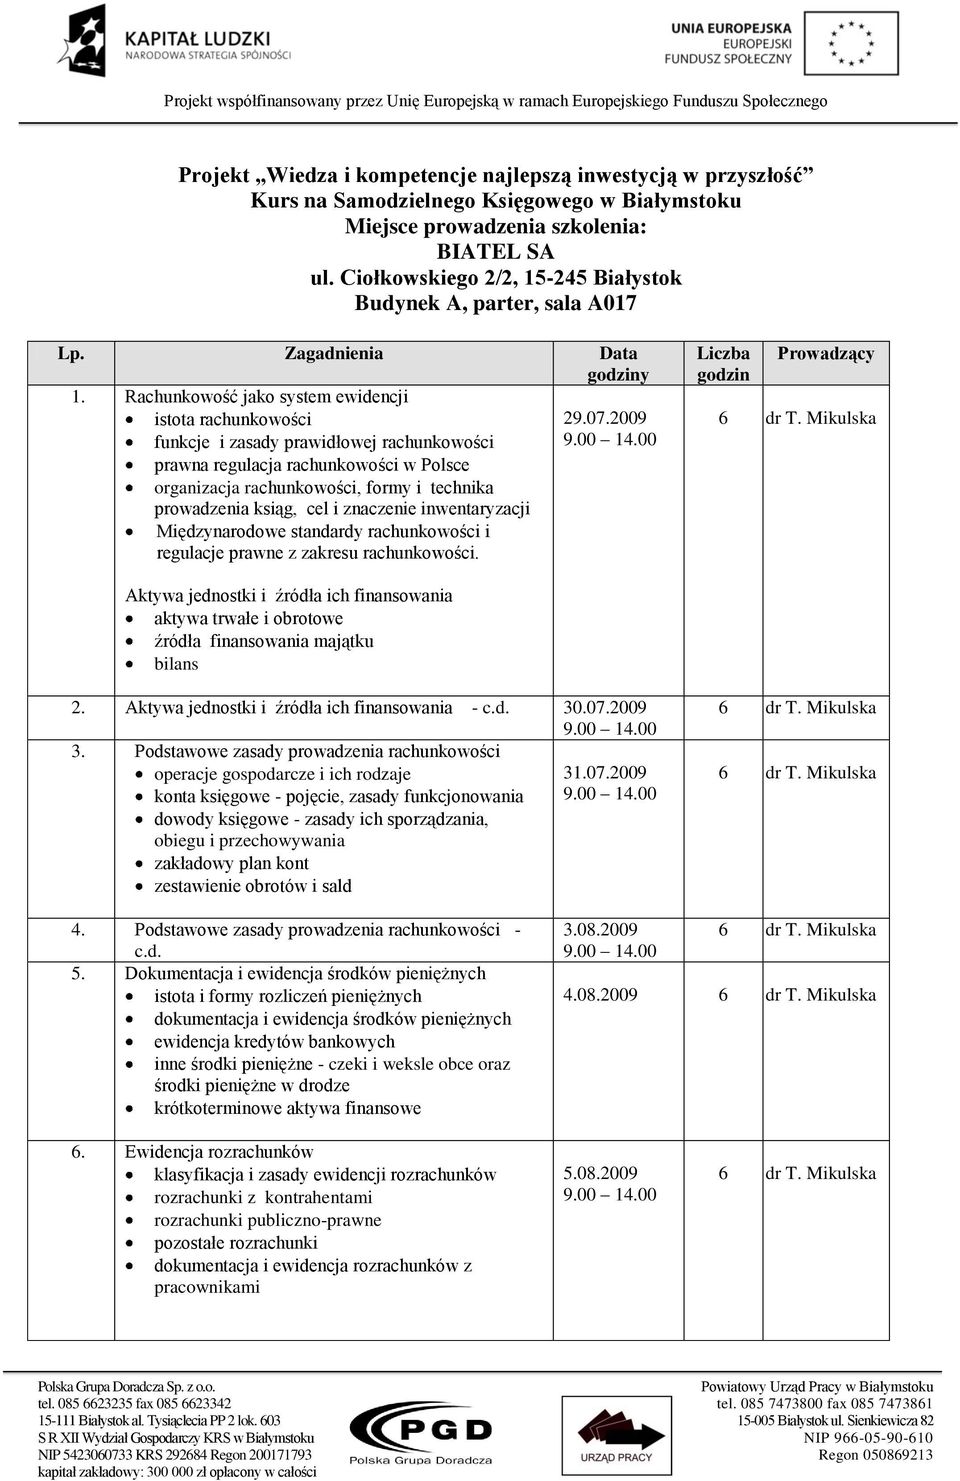 2009 funkcje i zasady prawidłowej rachunkowości 9.00 1.